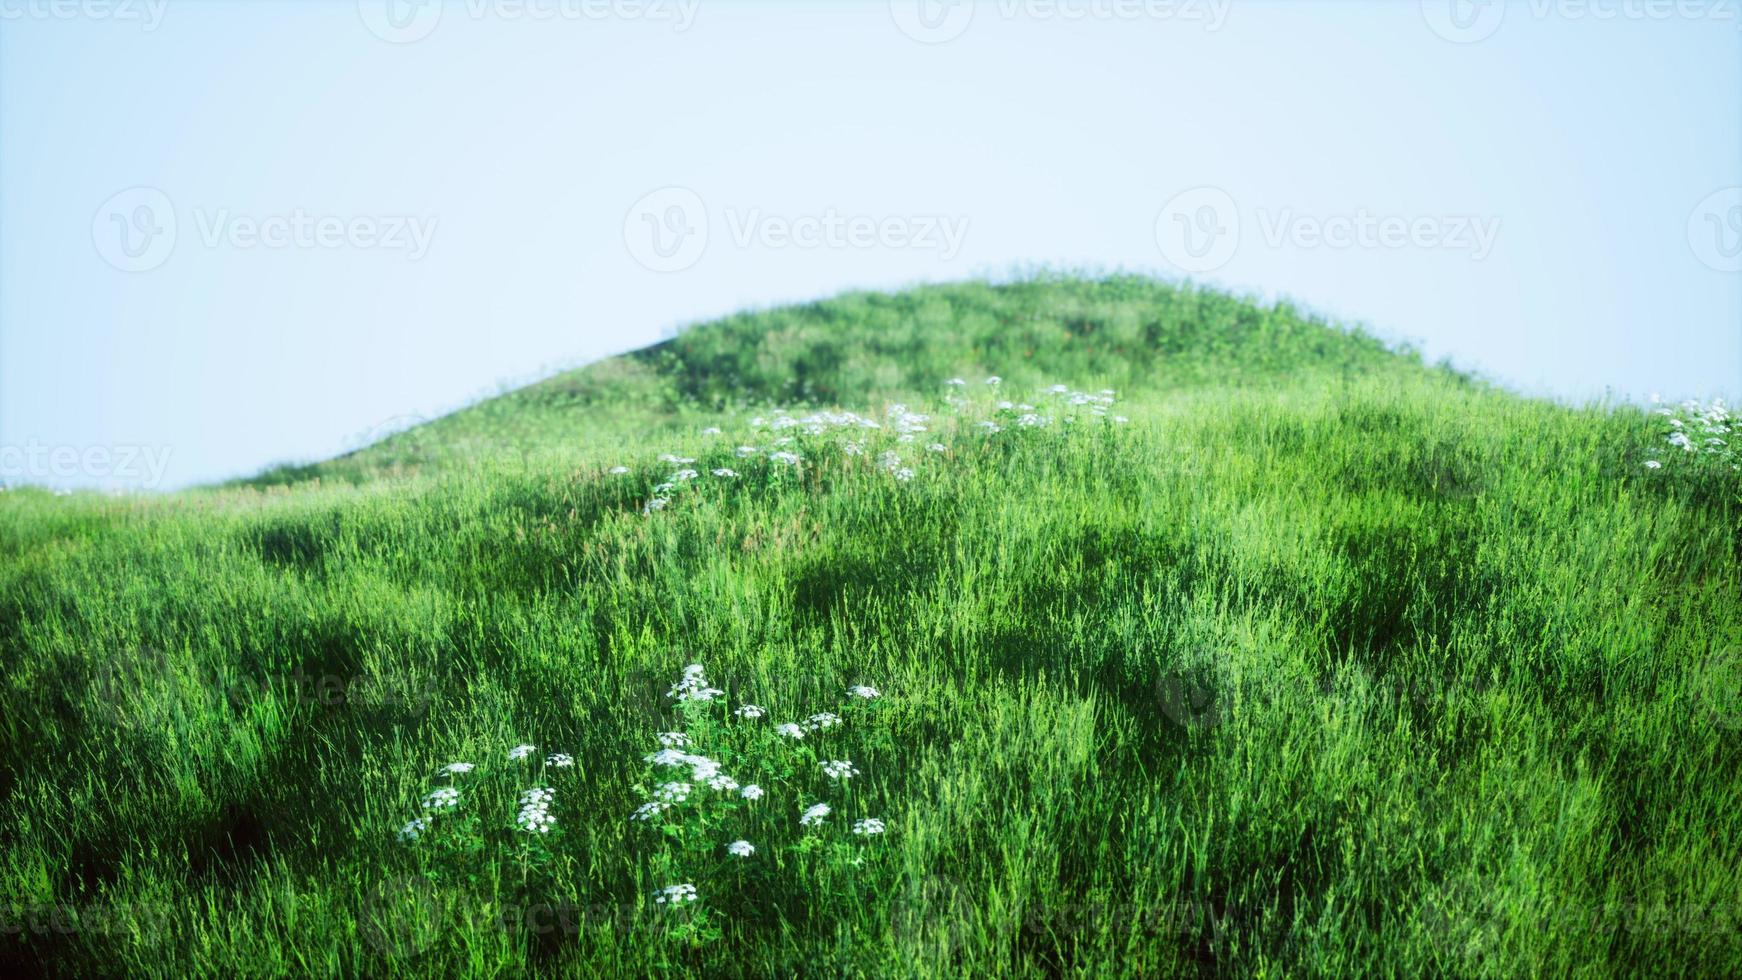 colinas verdes com grama fresca e flores silvestres no início do verão foto